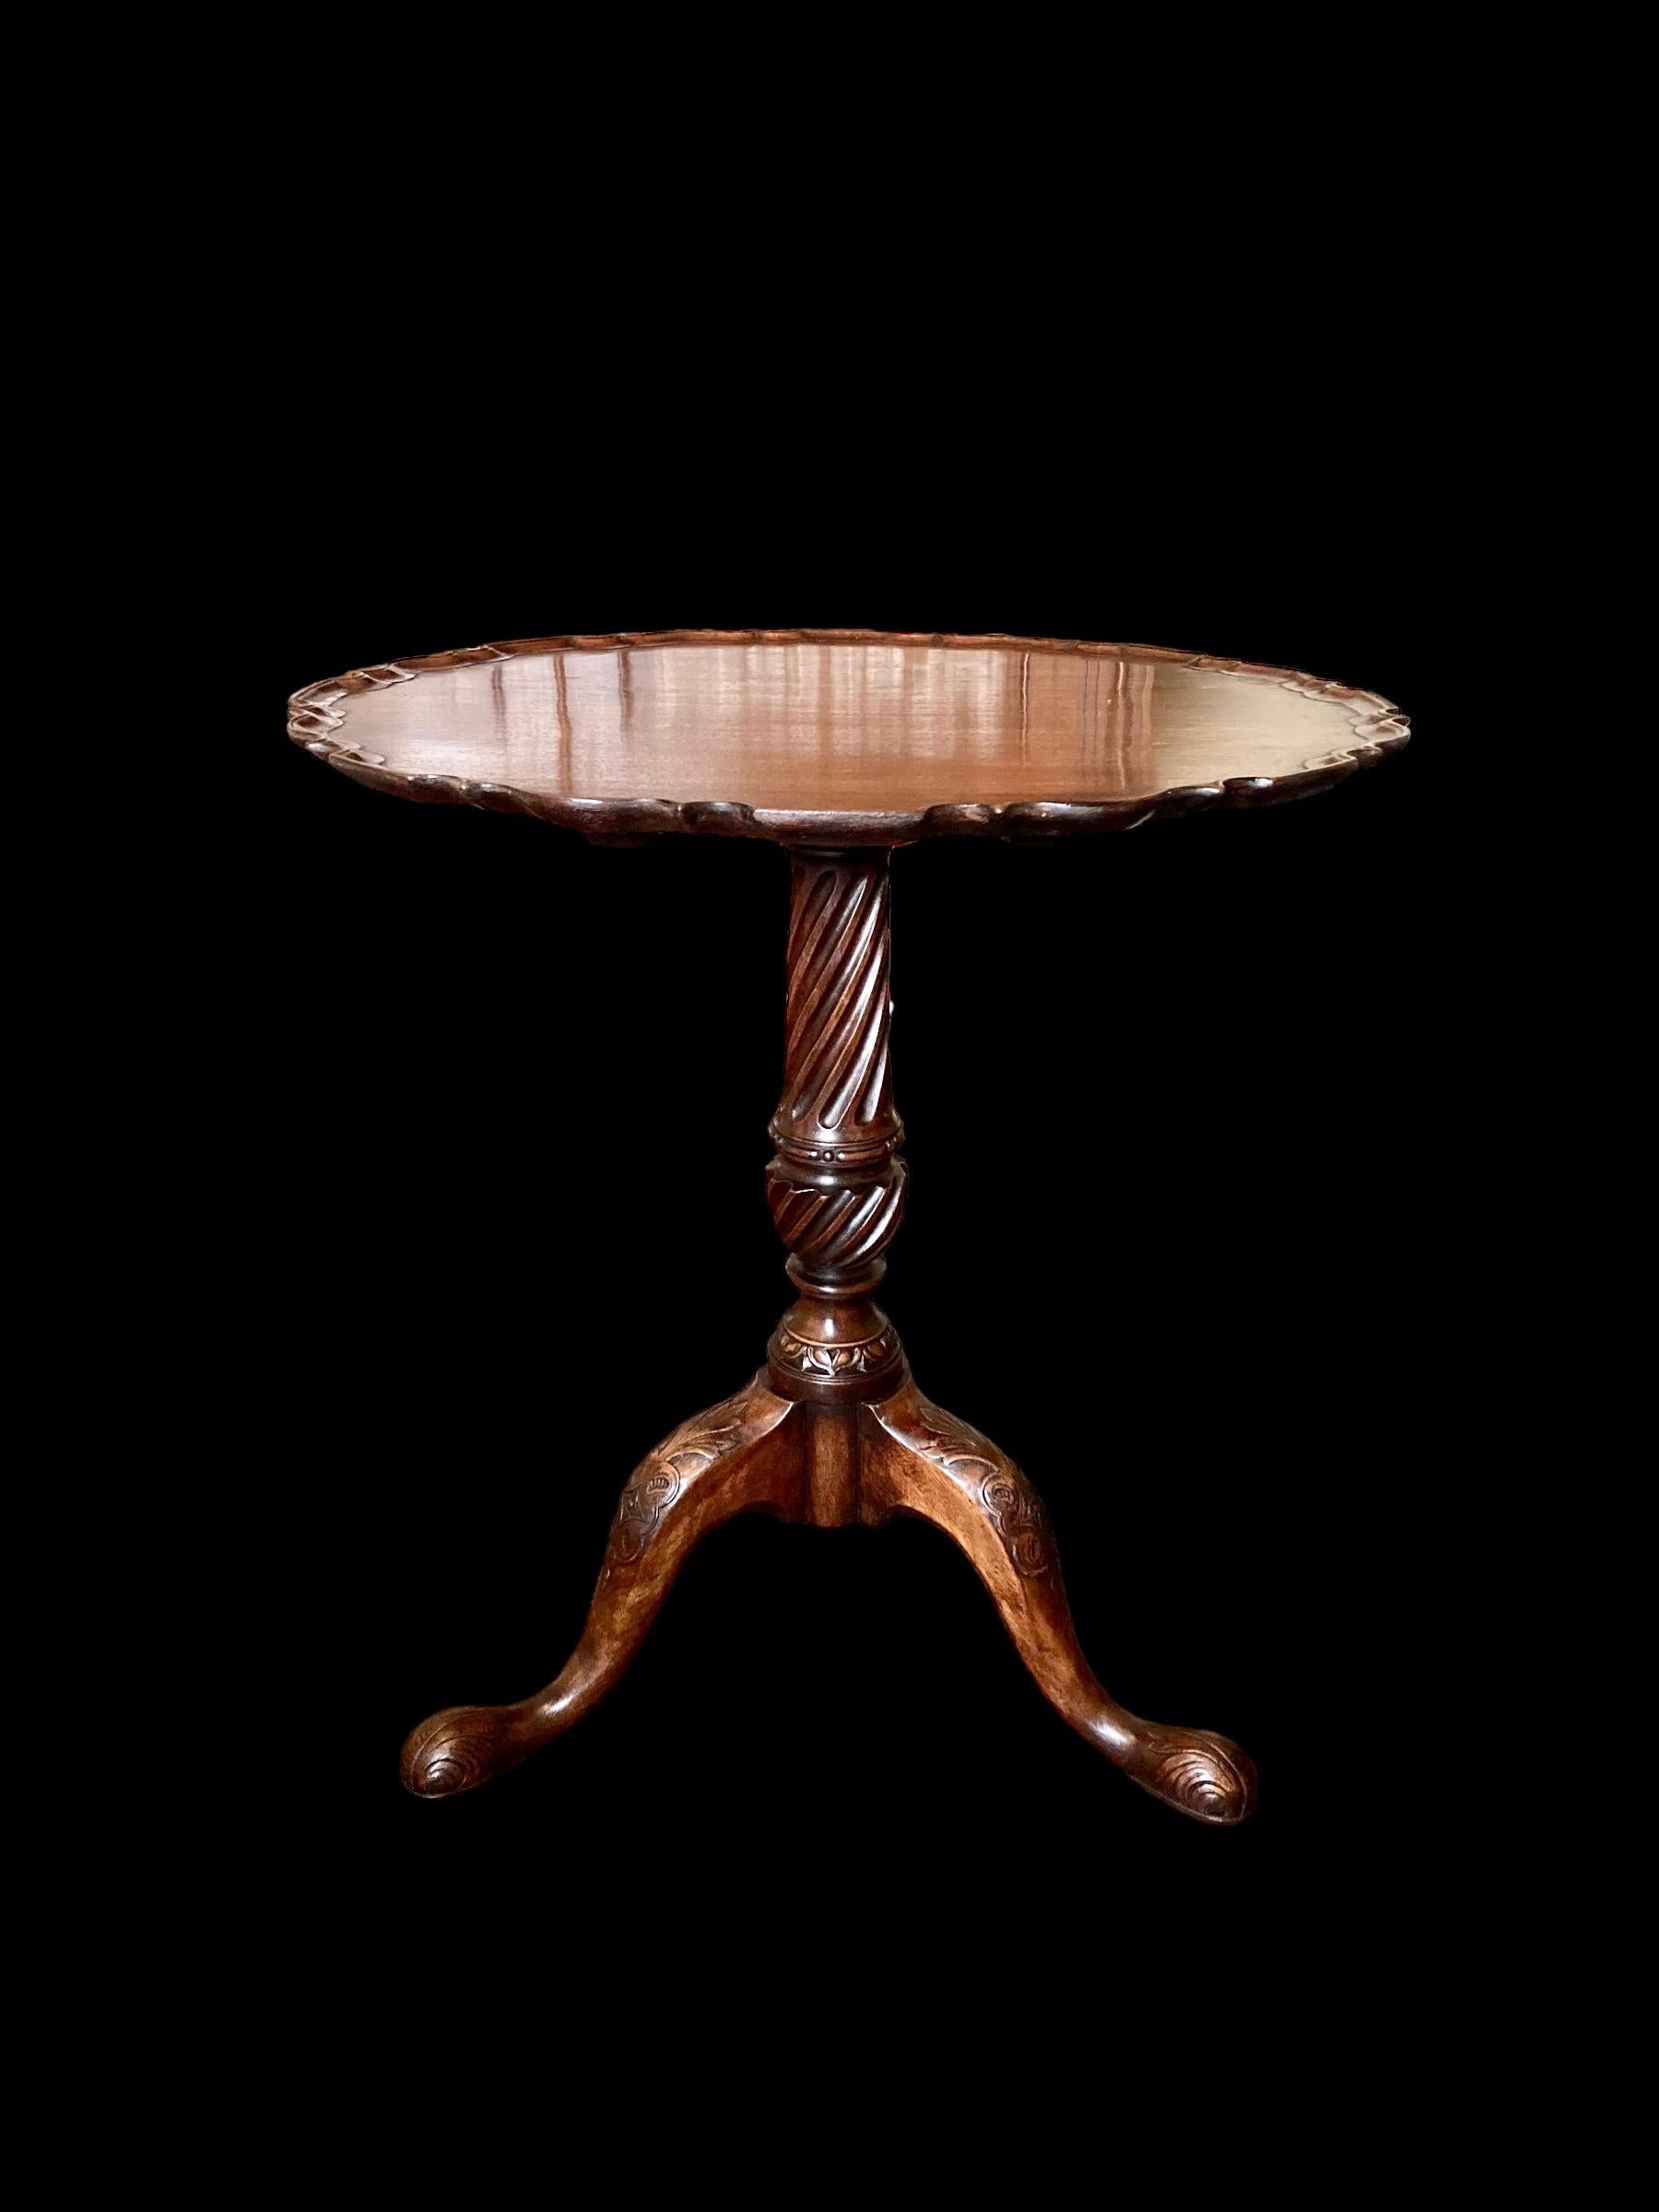 Charmante table d'appoint ou table à thé en acajou de la fin du 19e siècle, à plateau basculant. La base du piédestal est sculptée d'une imposante et belle colonne cannelée reposant sur des jambes finement sculptées en bas avec des genoux sculptés